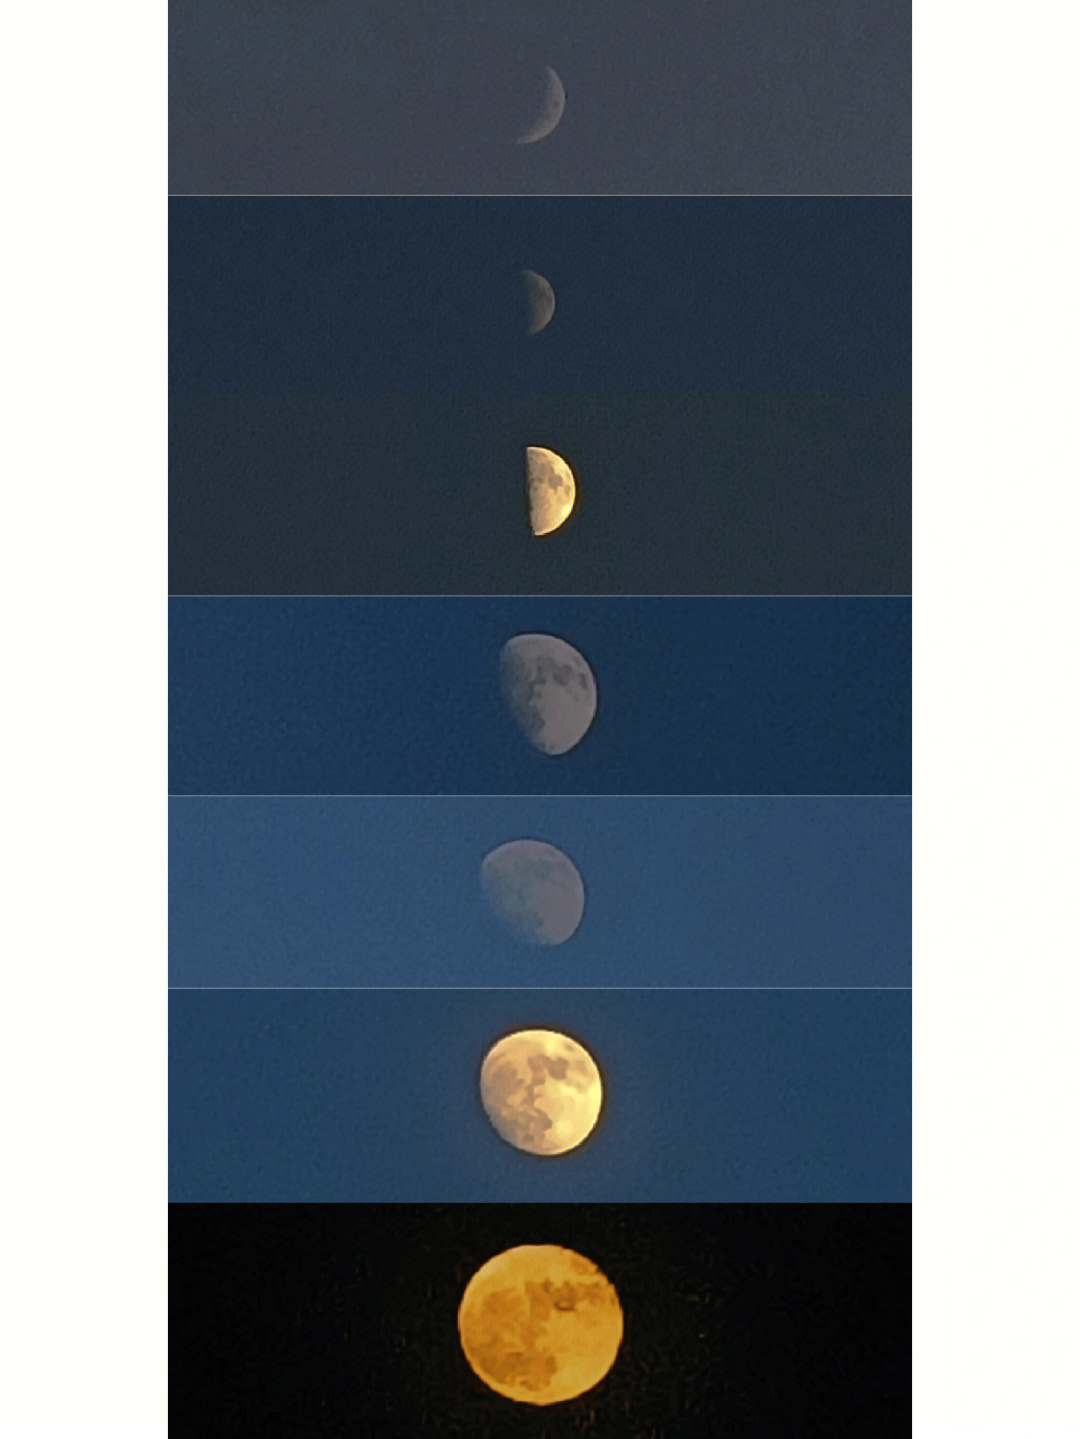 弦月凸月满月据说是今年最大的超级月亮月亮九点才出现而我六点就开始